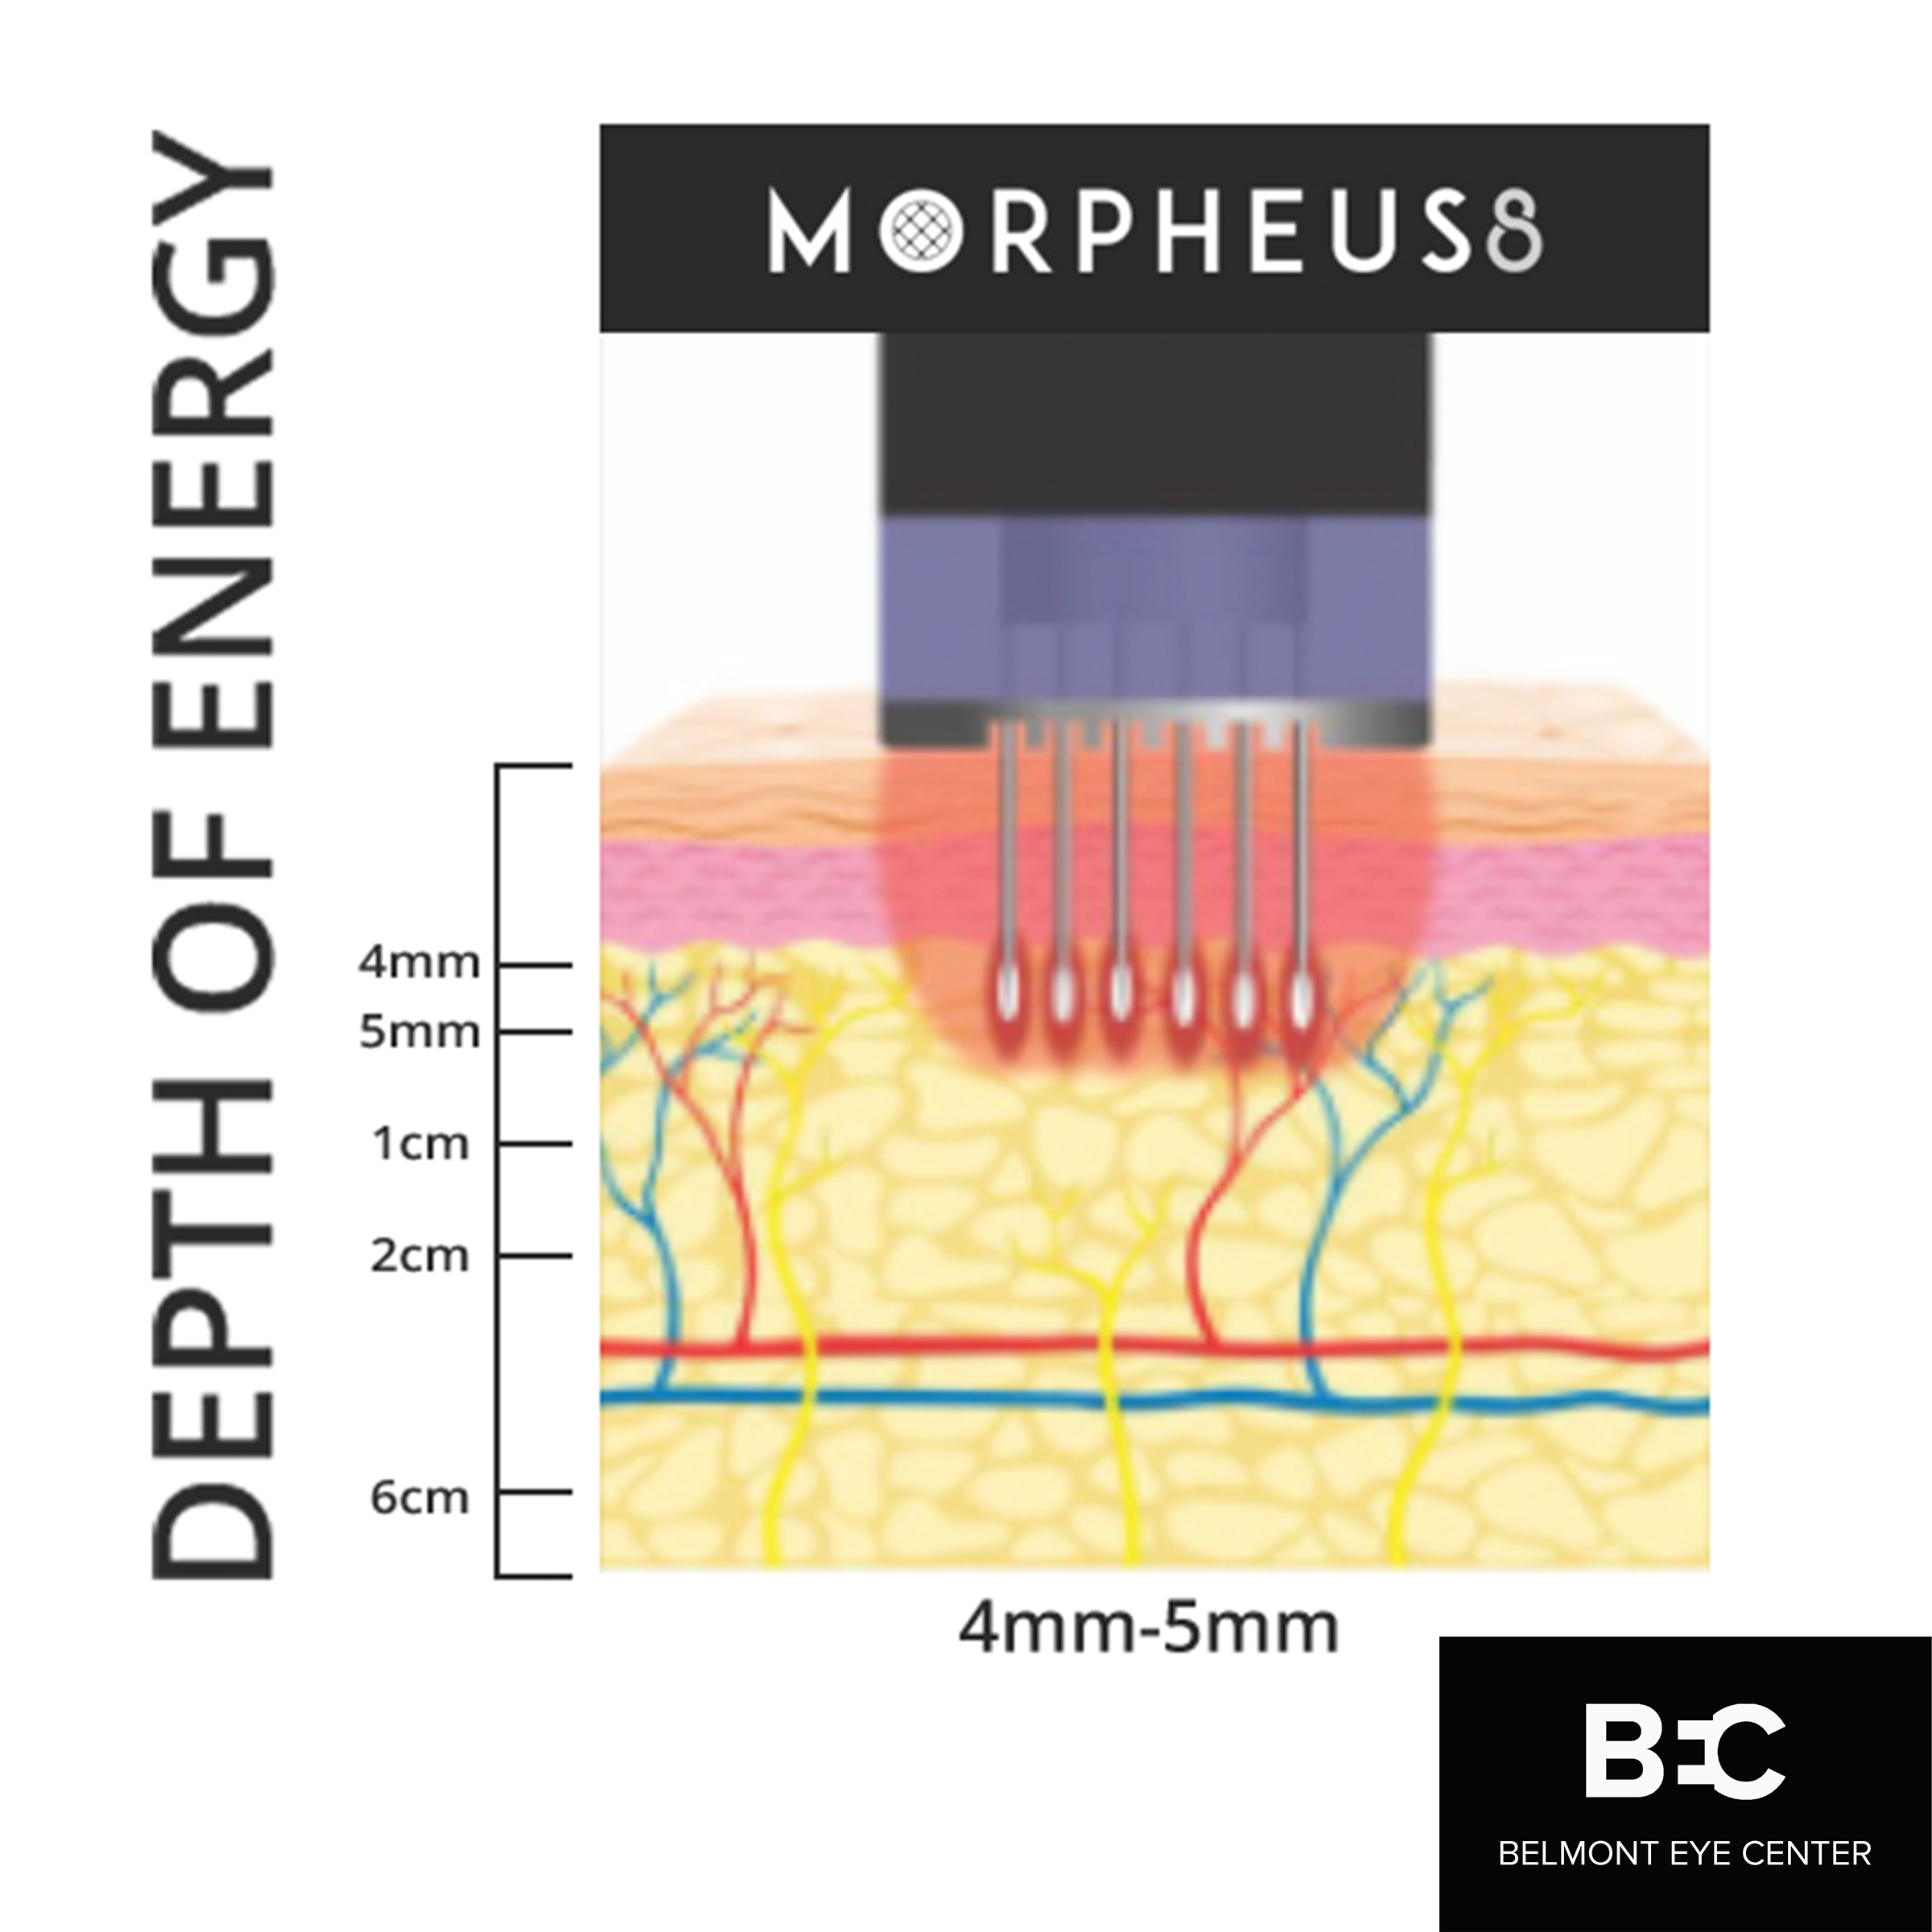 morpheus8 diagram depth